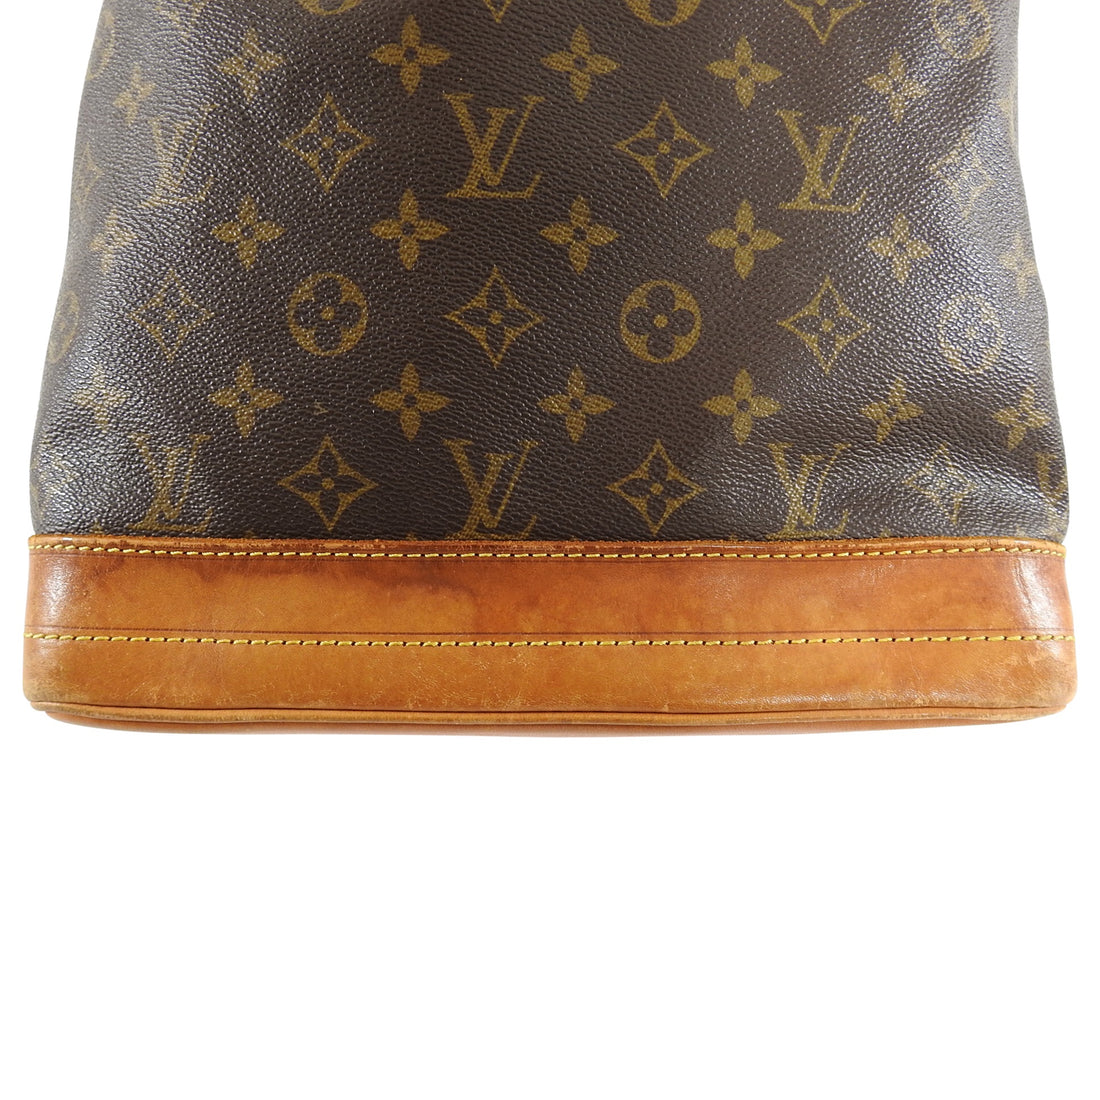 Lot - Louis Vuitton Malletier Monogram Noe GM Shoulder Bag (Date Code  Illegible) Height: 13-1/8 in; Length: 9-3/4 in; Depth: 7-3/8 in